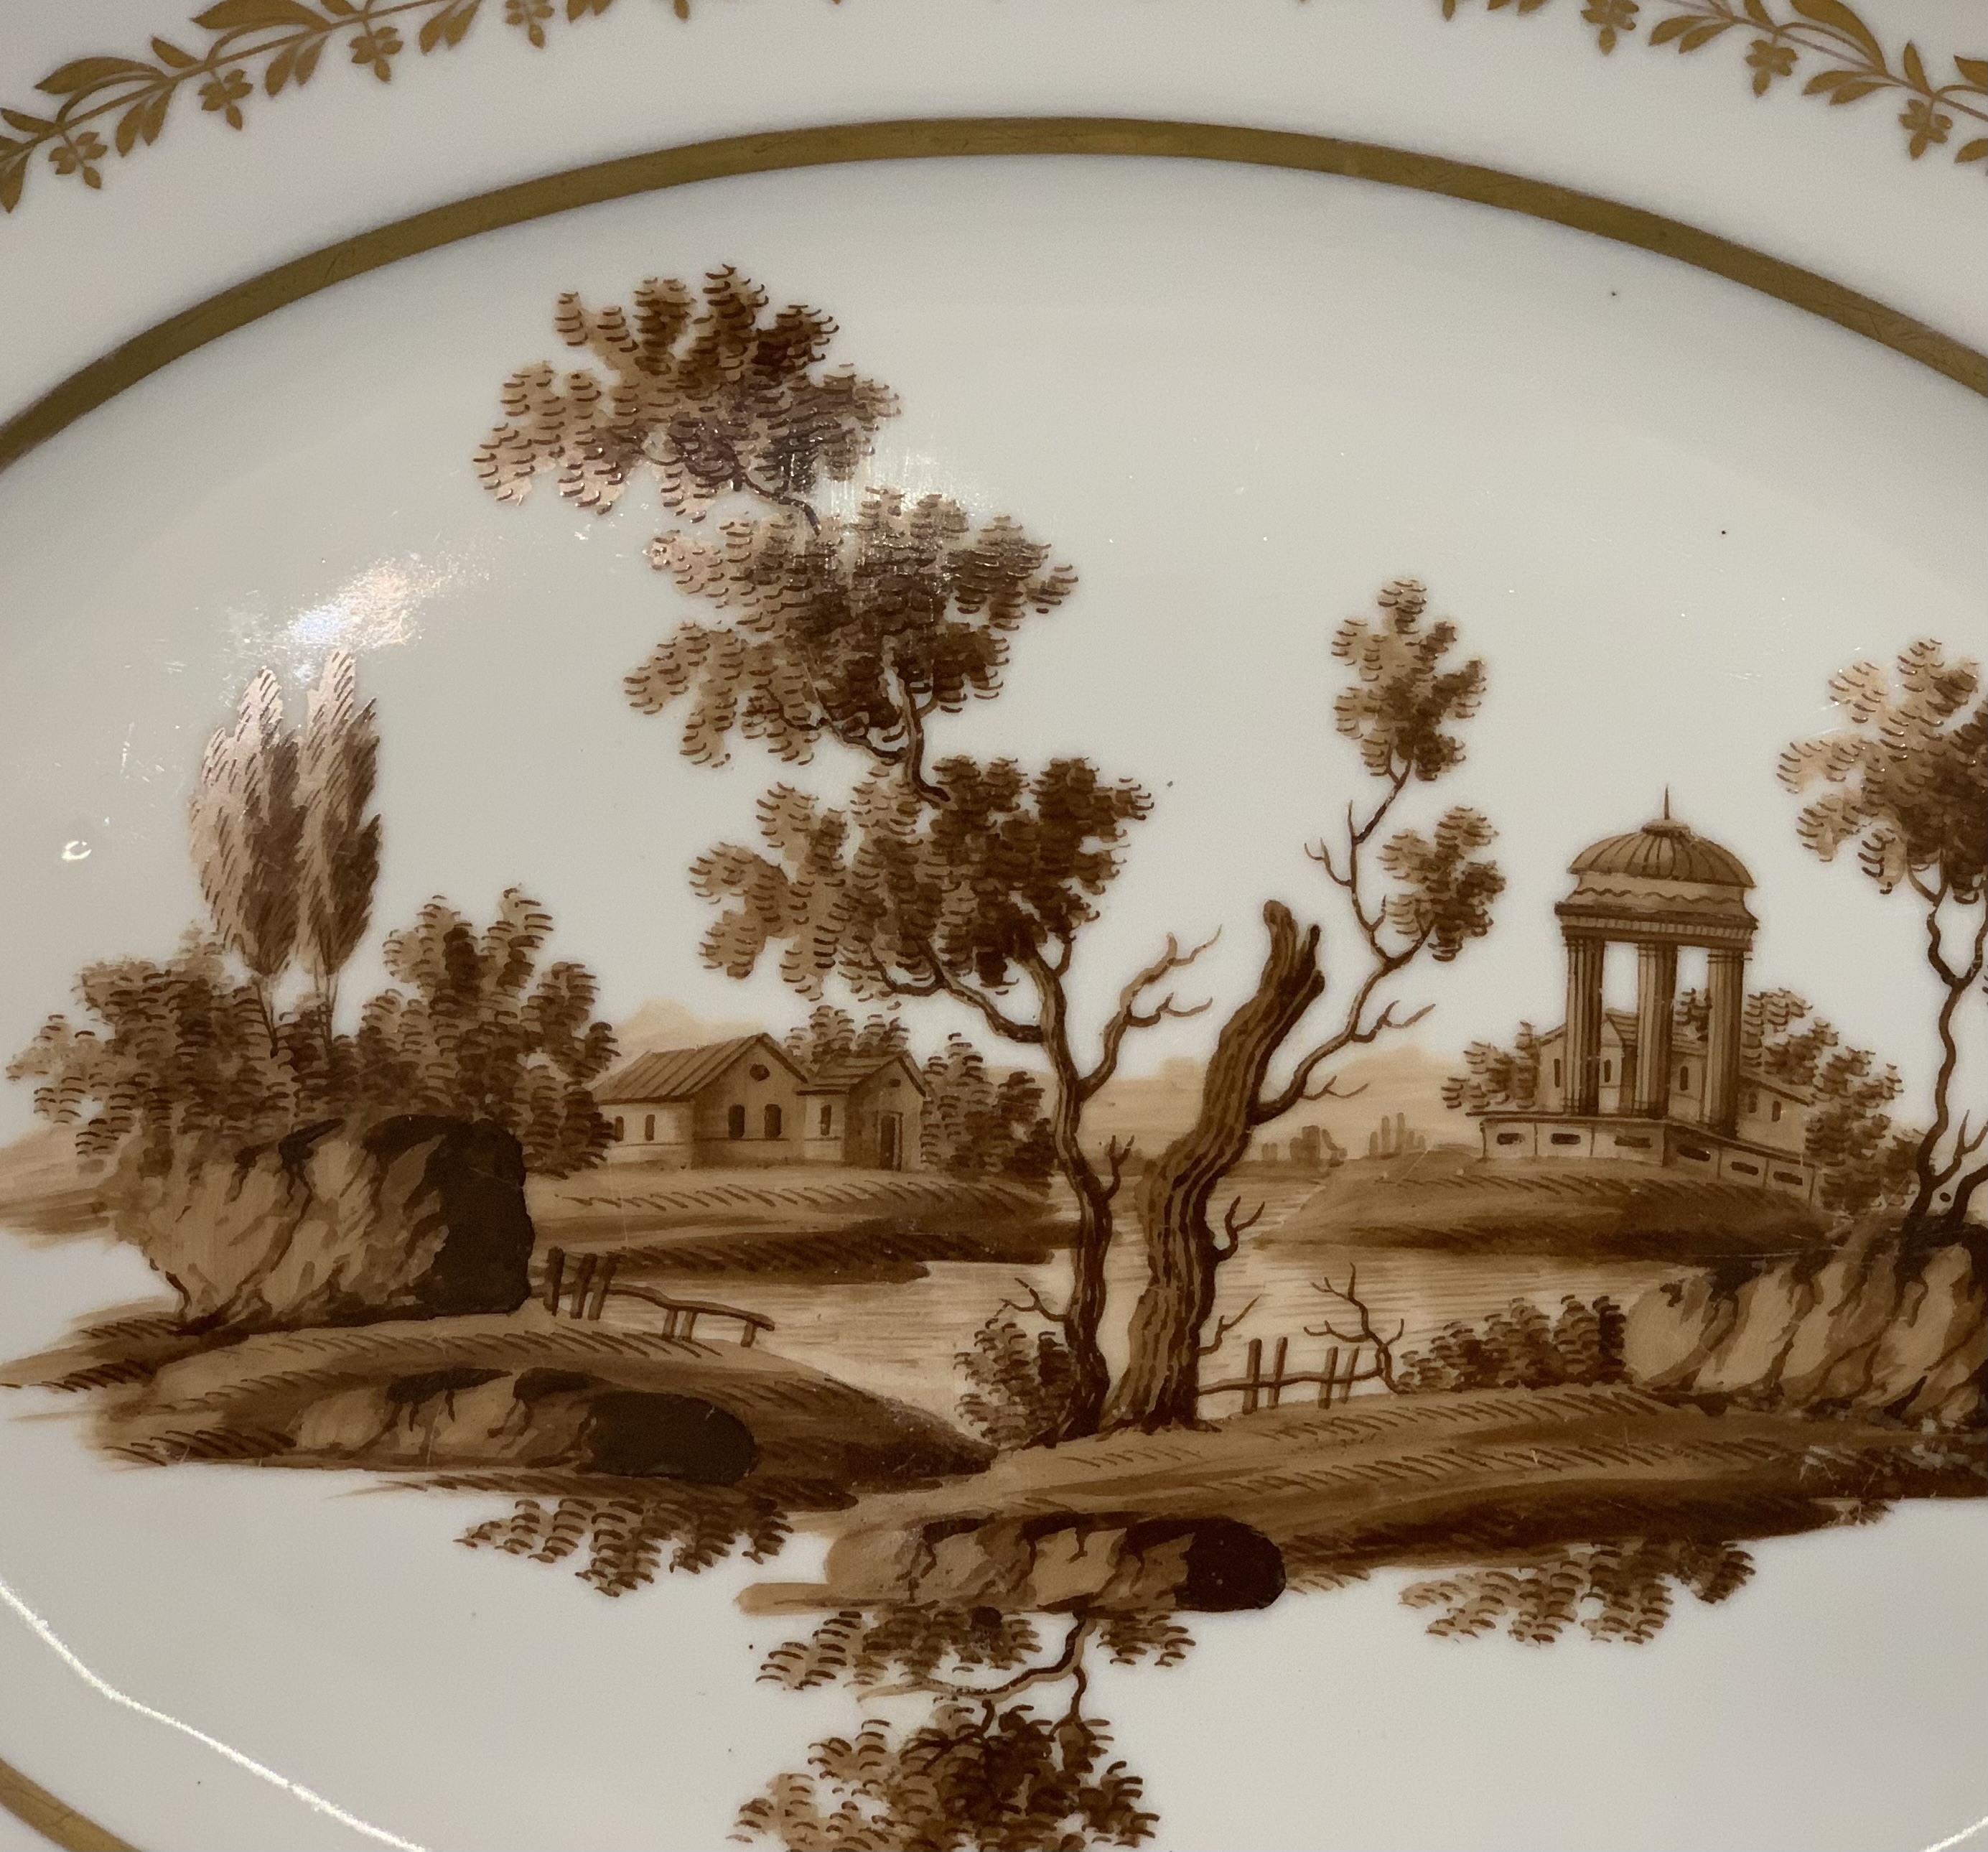 Блюдо с романтическим пейзажем, Россия, завод "А.Г. Попова", 1810-1820 гг.